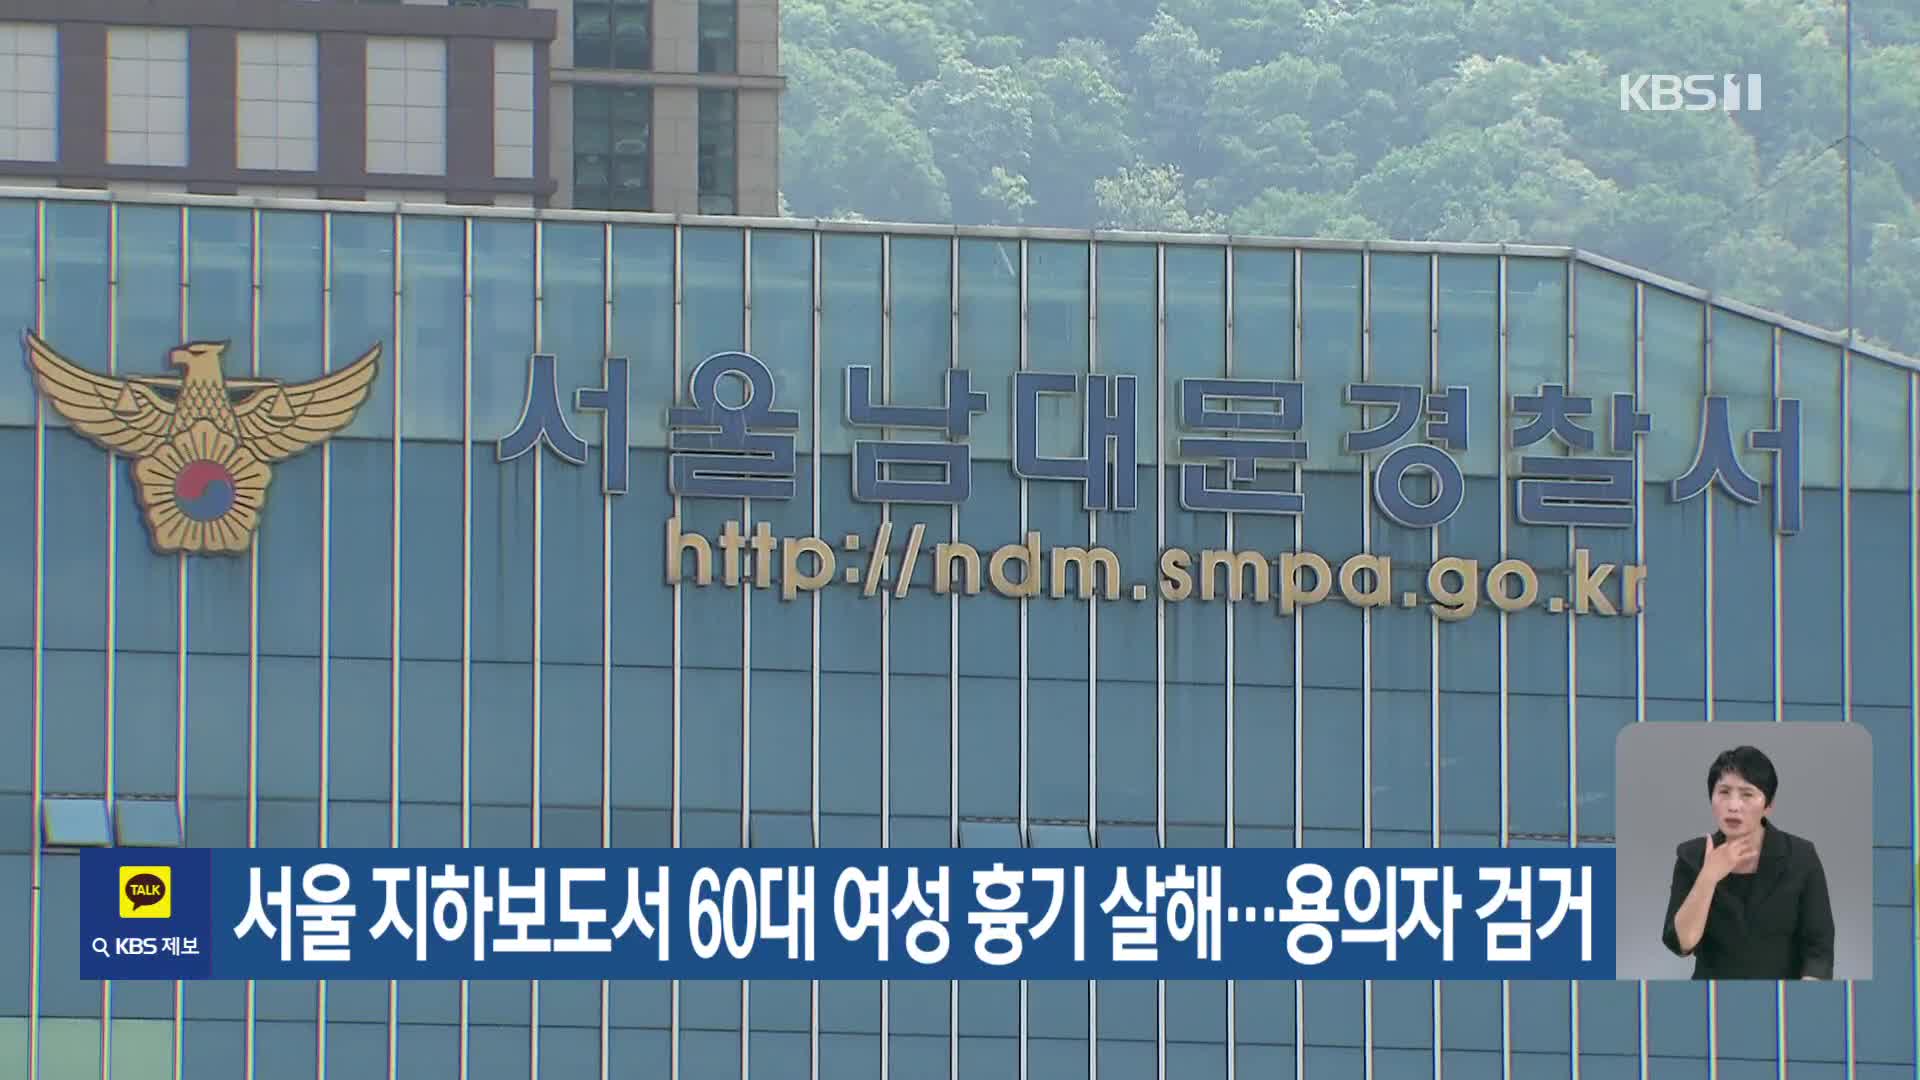 서울 지하보도서 60대 여성 흉기 살해…용의자 검거